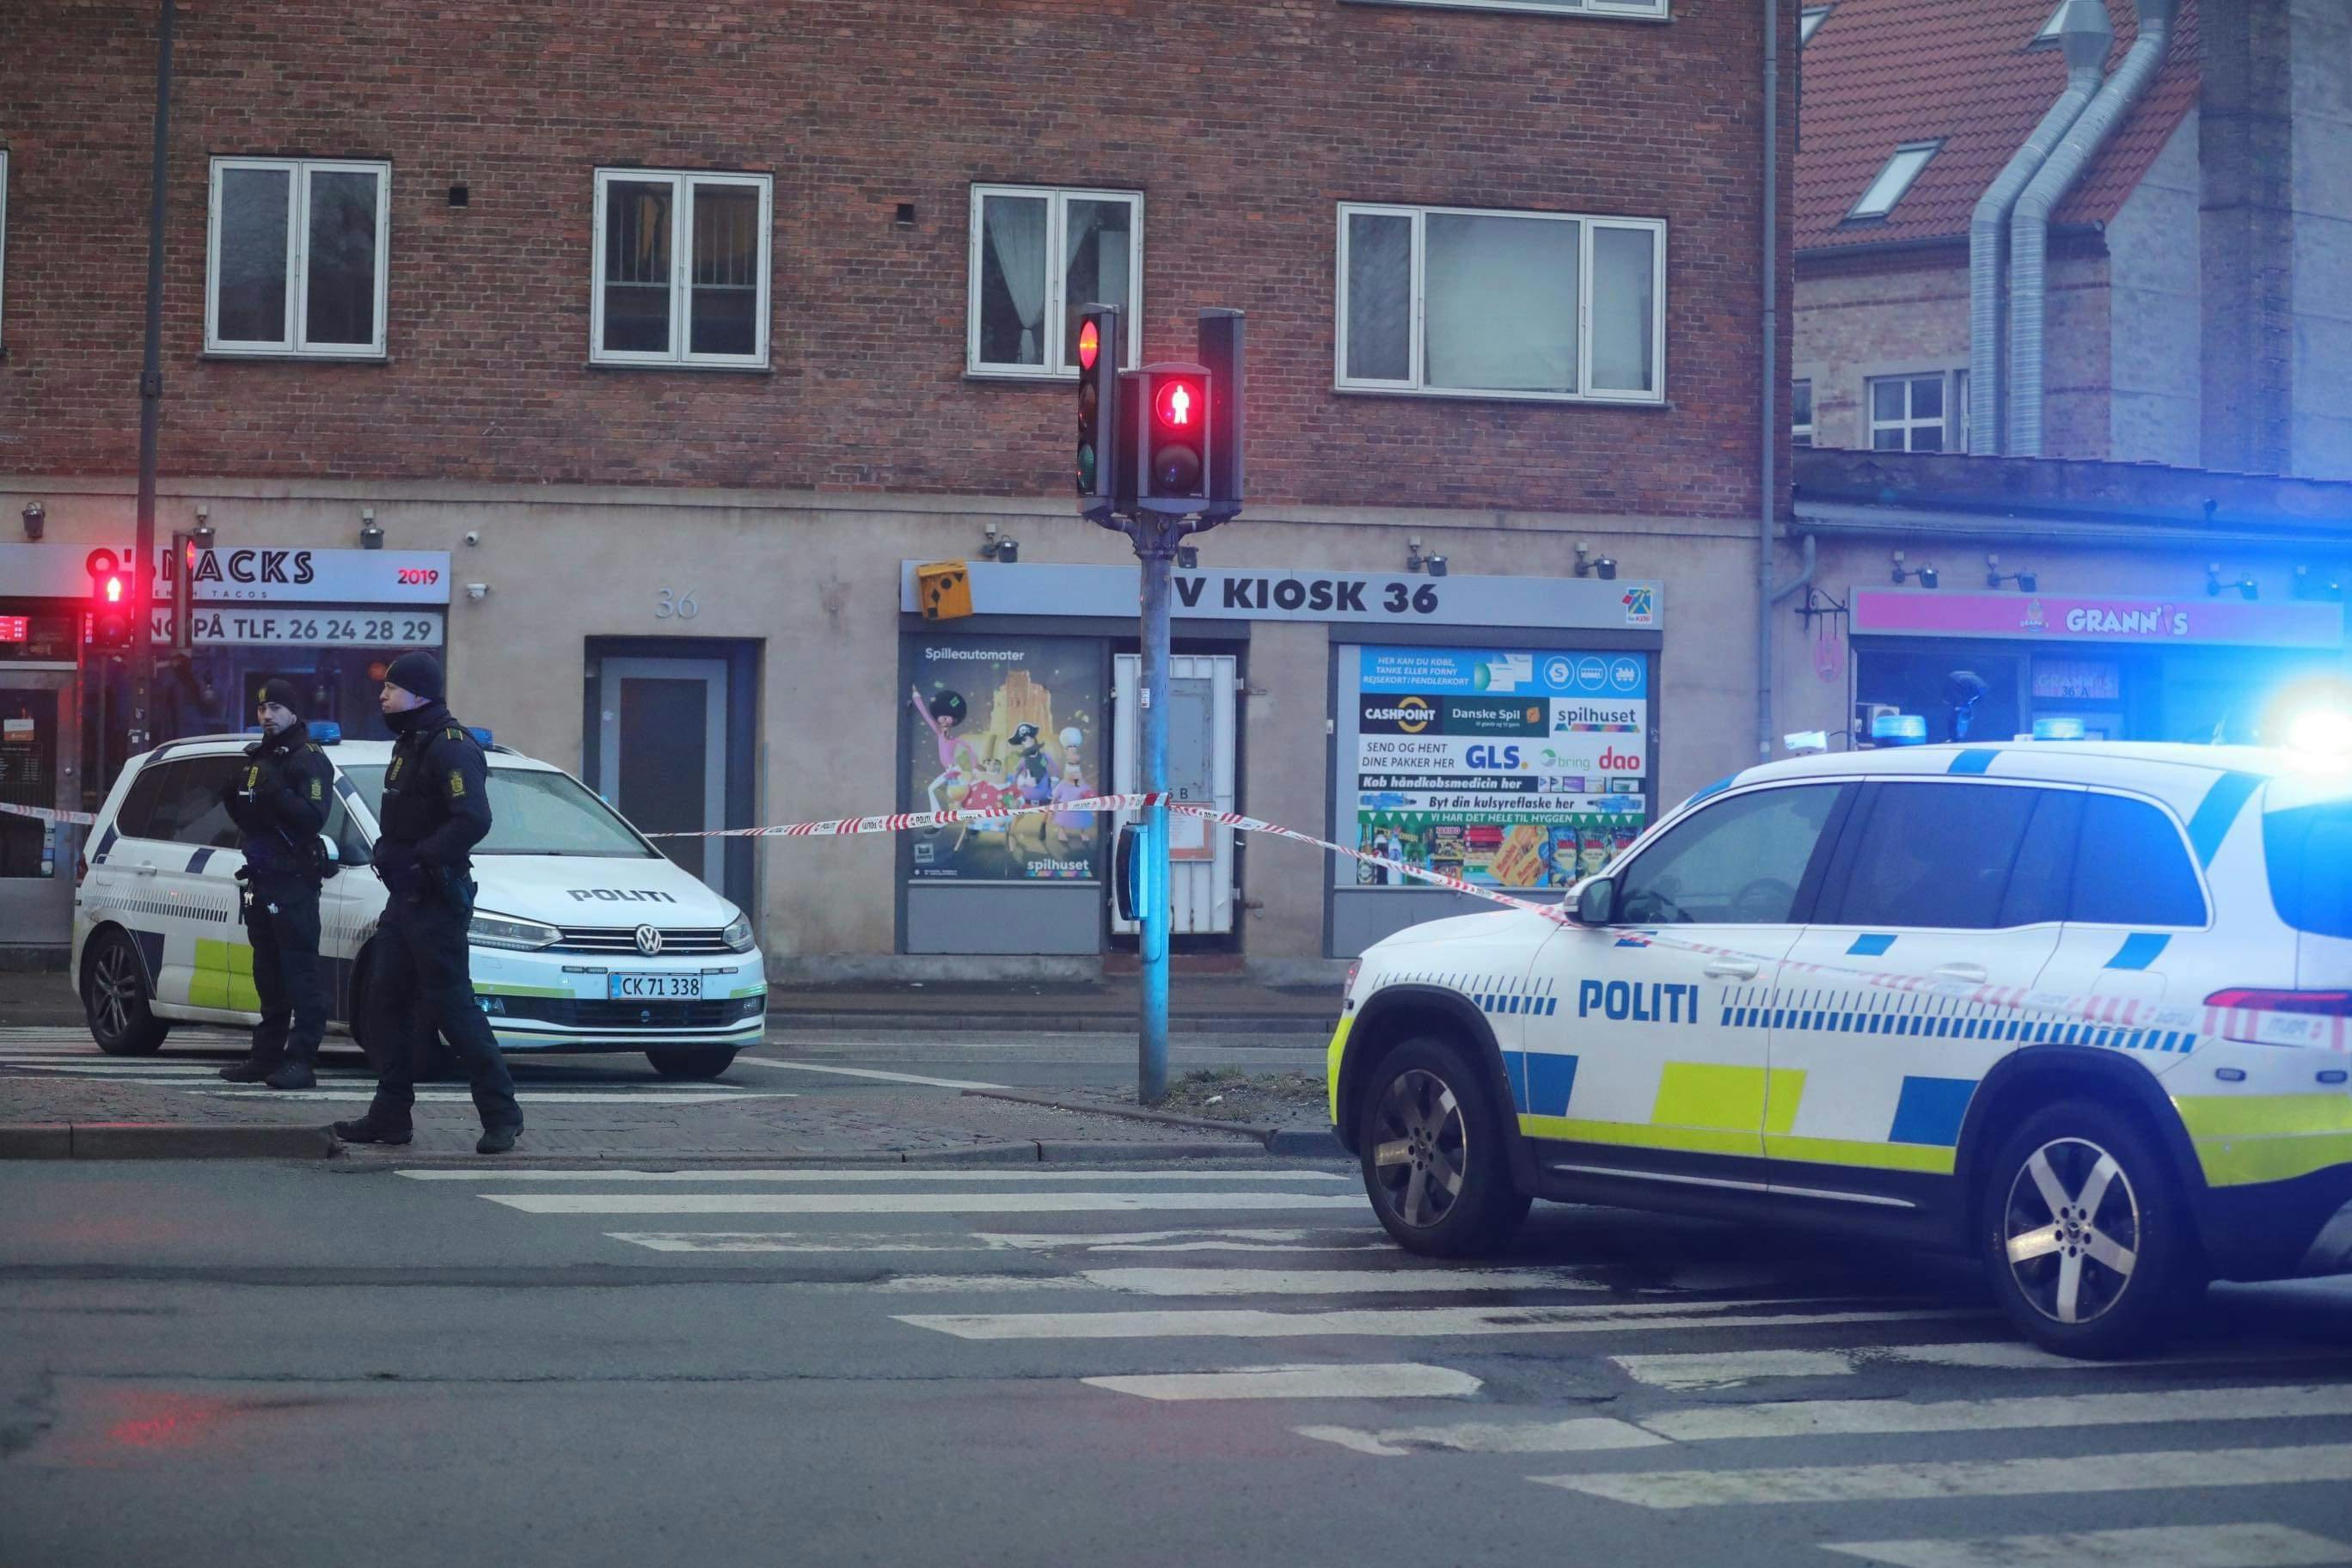 En person er lørdag morgen fragtet til hospitalet efter at være blevet stukket med kniv ved en københavnsk moské.